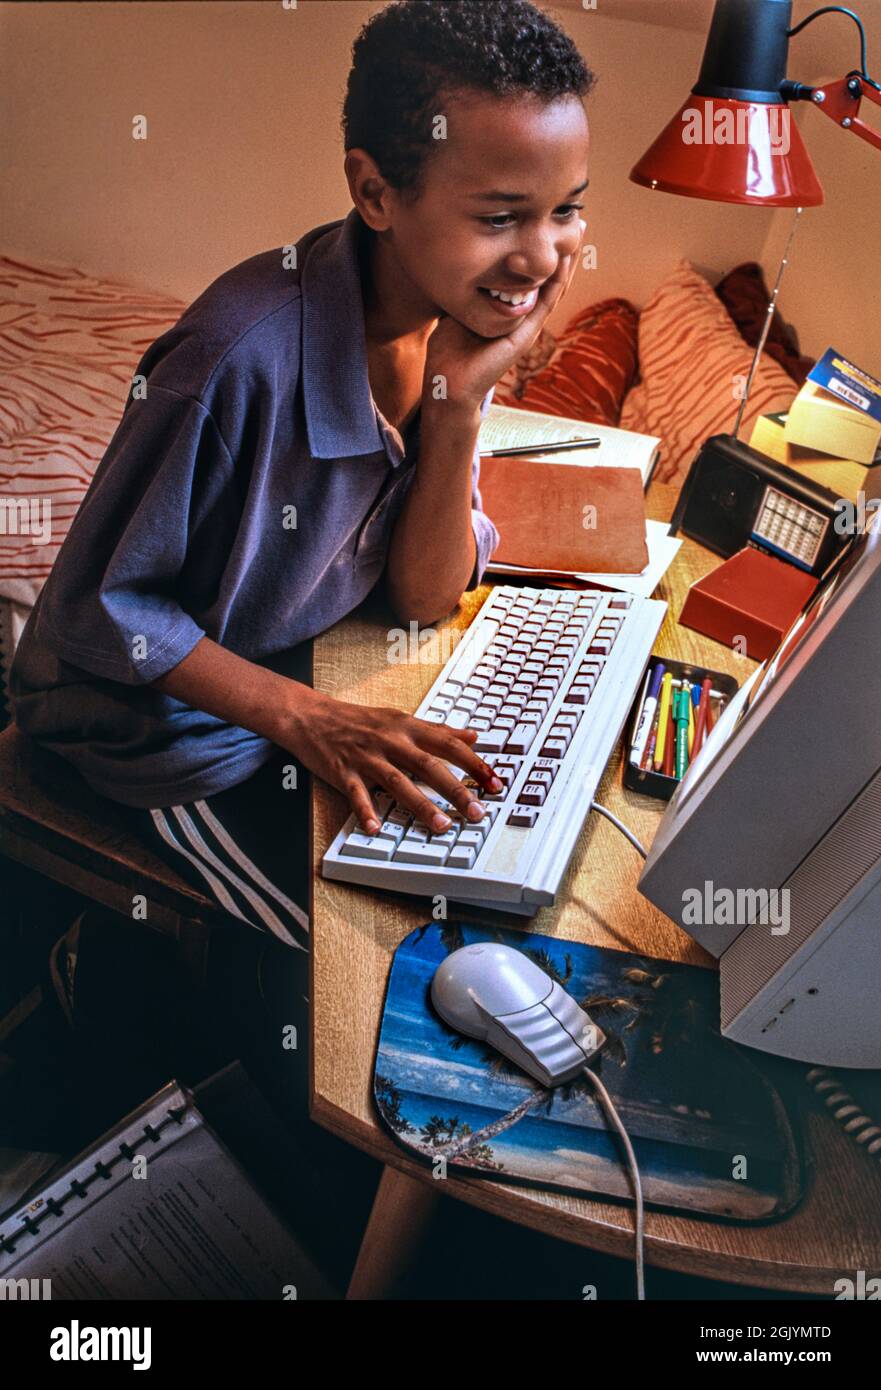 Premier ordinateur mode style 1990s surf Chambre Boy 7-9 ans Afrique Caraïbes dans sa chambre heureux surf détendu jouant étudiant sur son premier ordinateur 1995 ère Banque D'Images